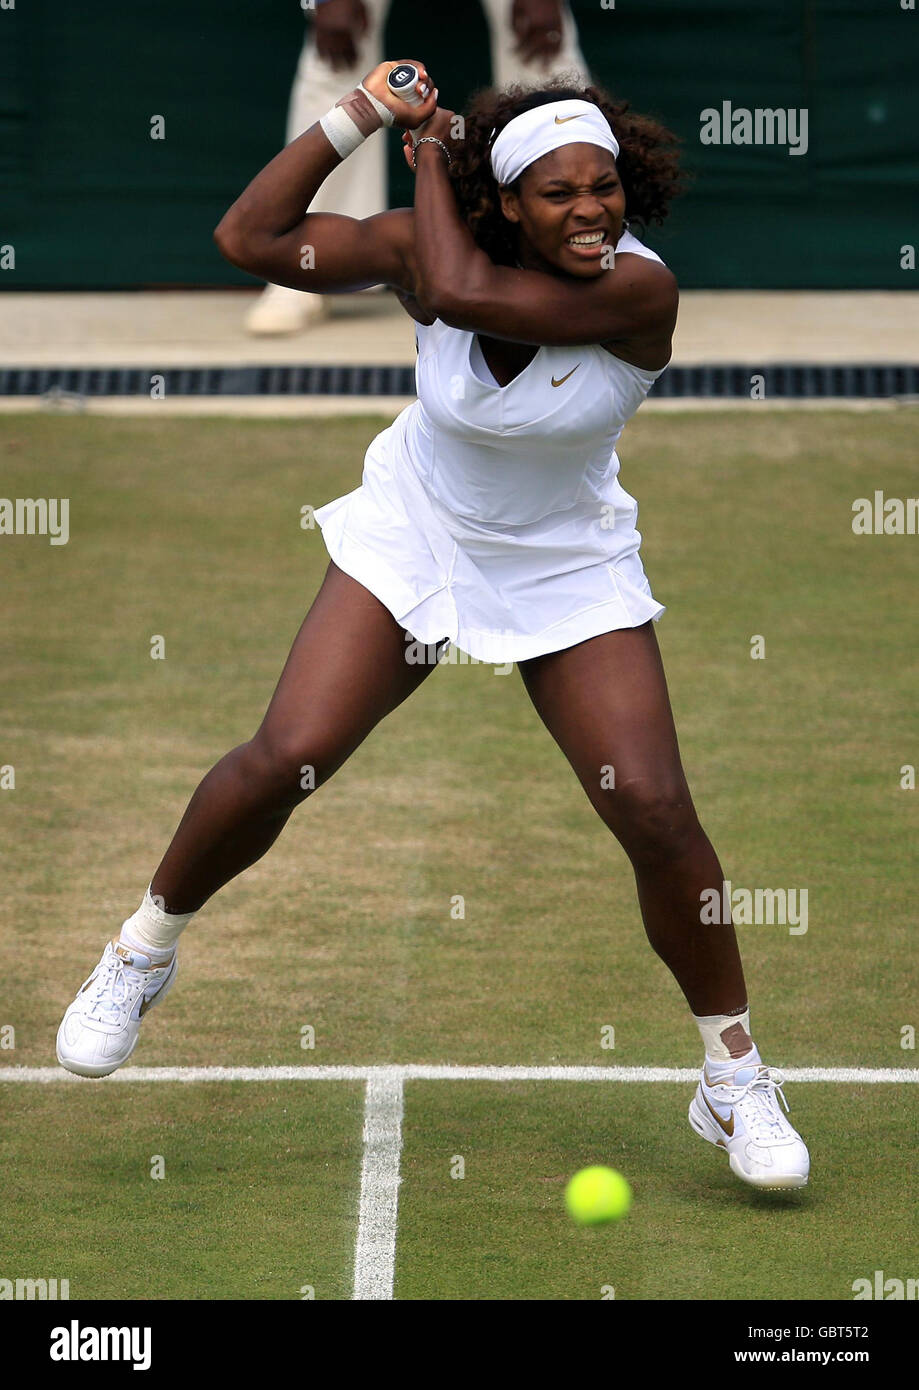 Serena Williams degli Stati Uniti in azione contro Roberta Vinci dell'Italia durante i Campionati di Wimbledon 2009 all'All England Lawn Tennis and Croquet Club di Wimbledon, Londra. Foto Stock